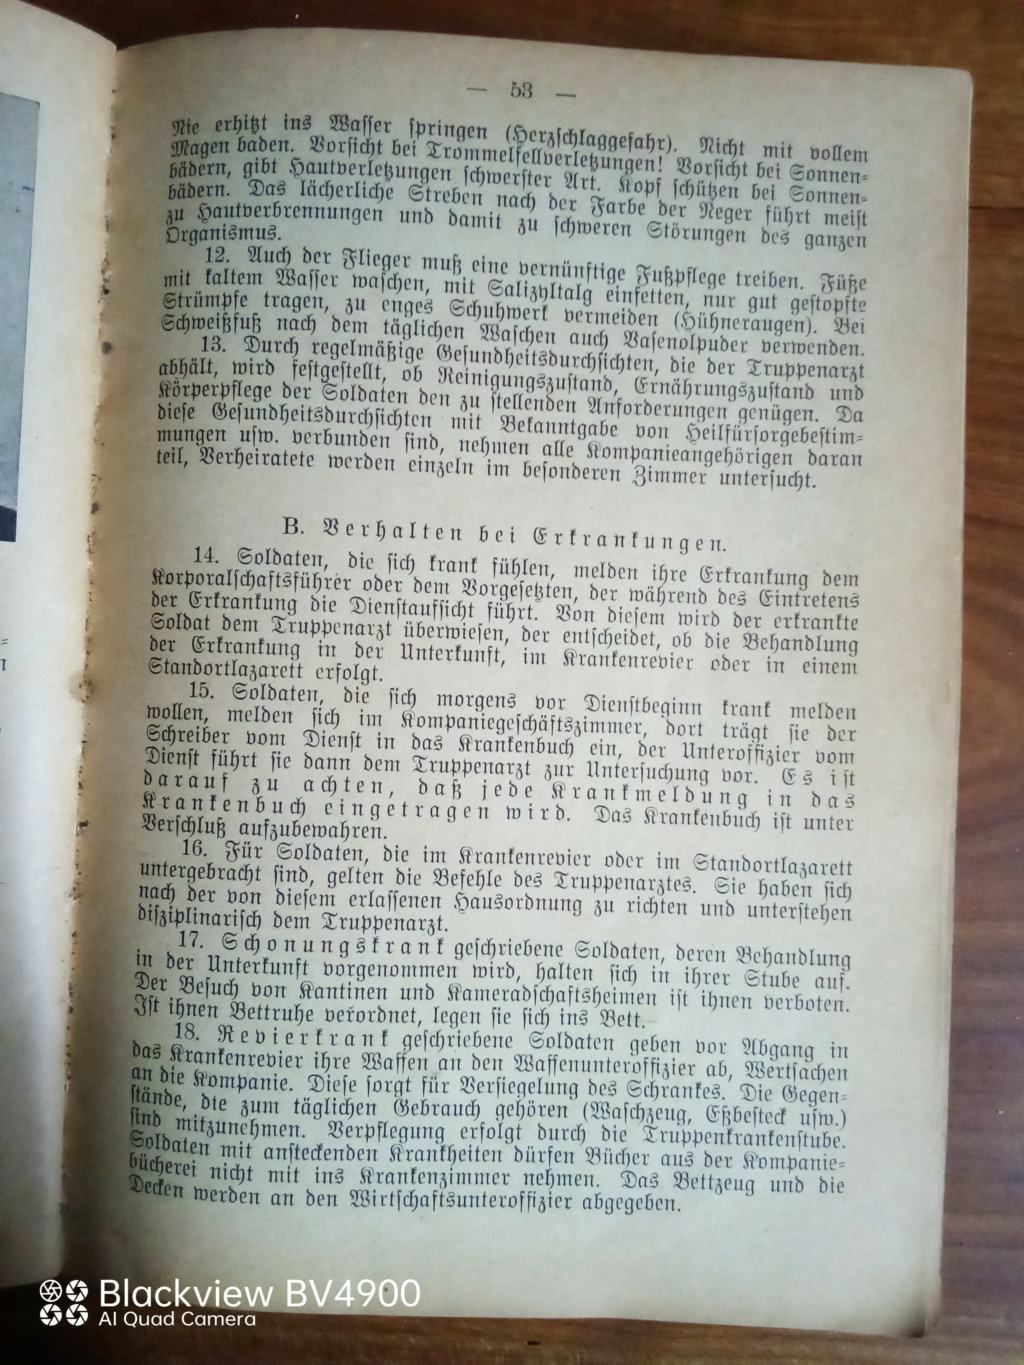 Handbucher der Luftwaffe - Page 2 Img_2117